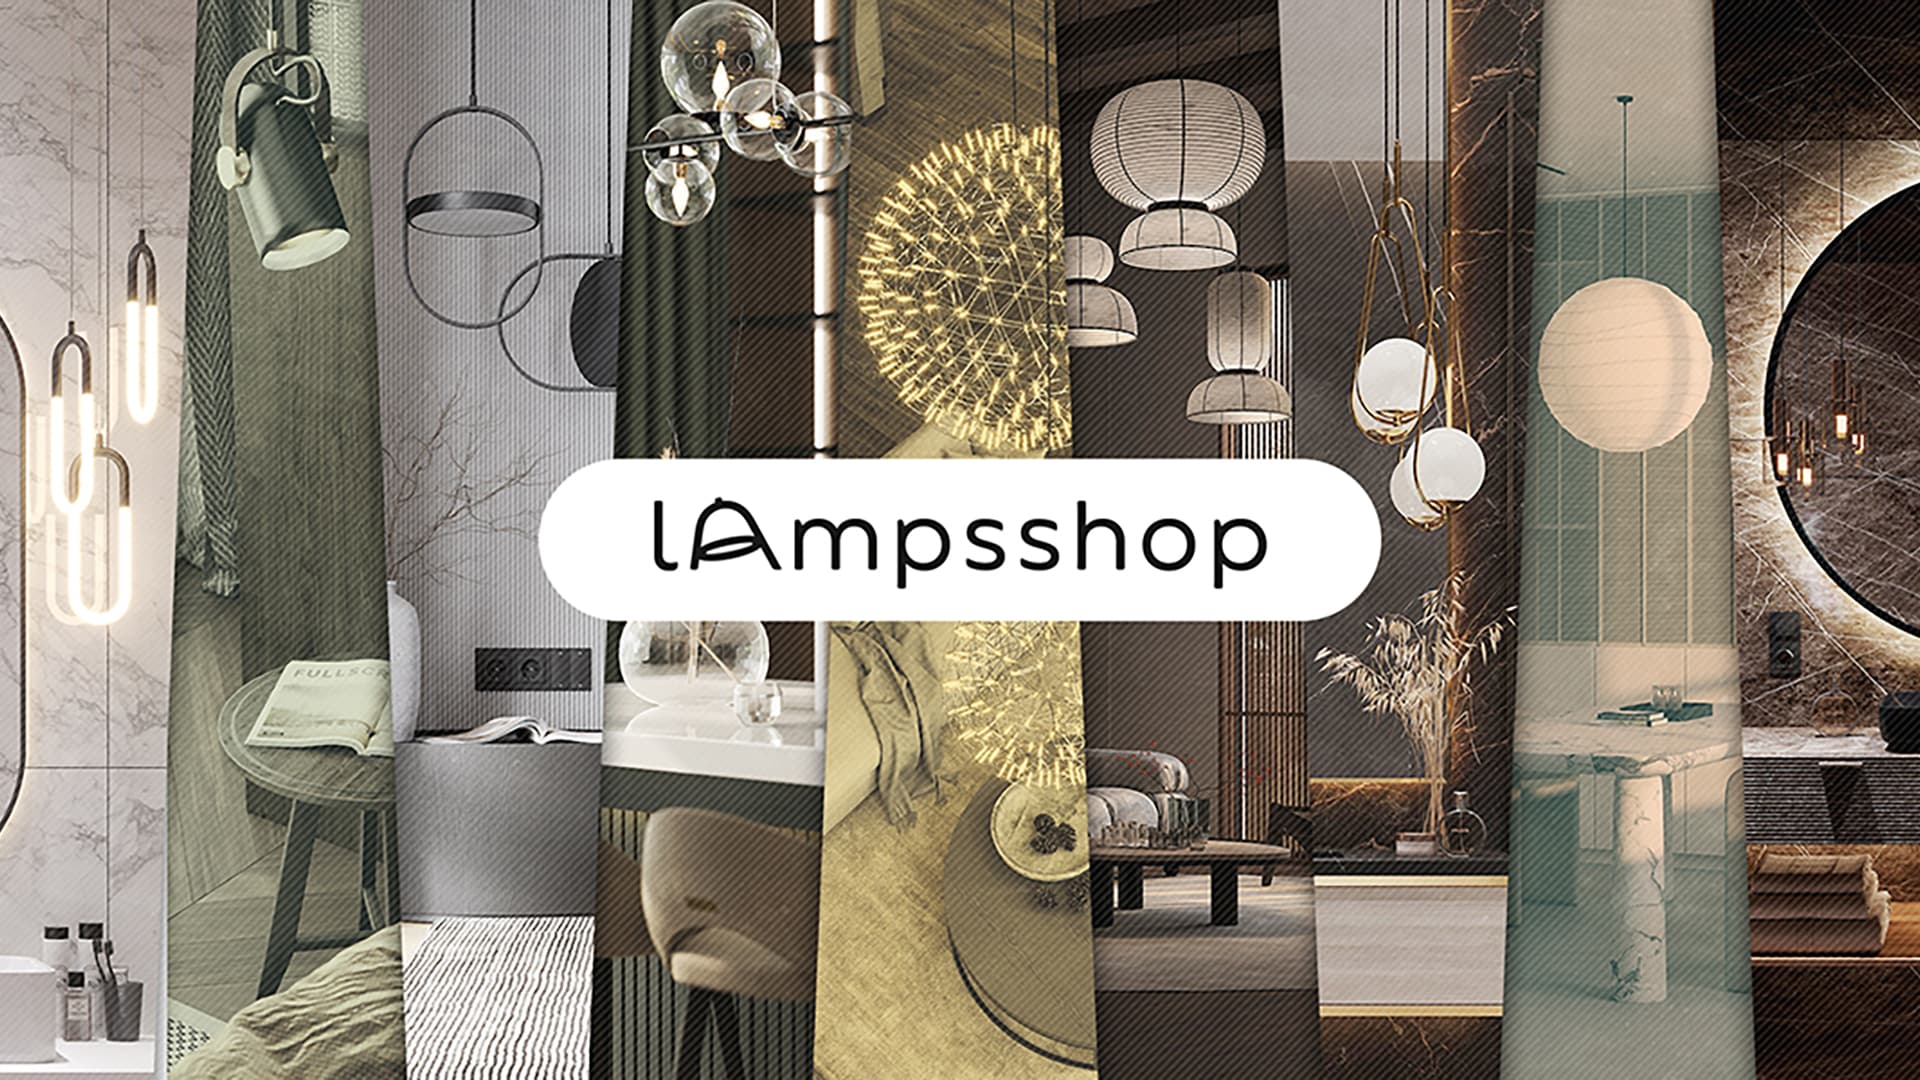 Lampsshop